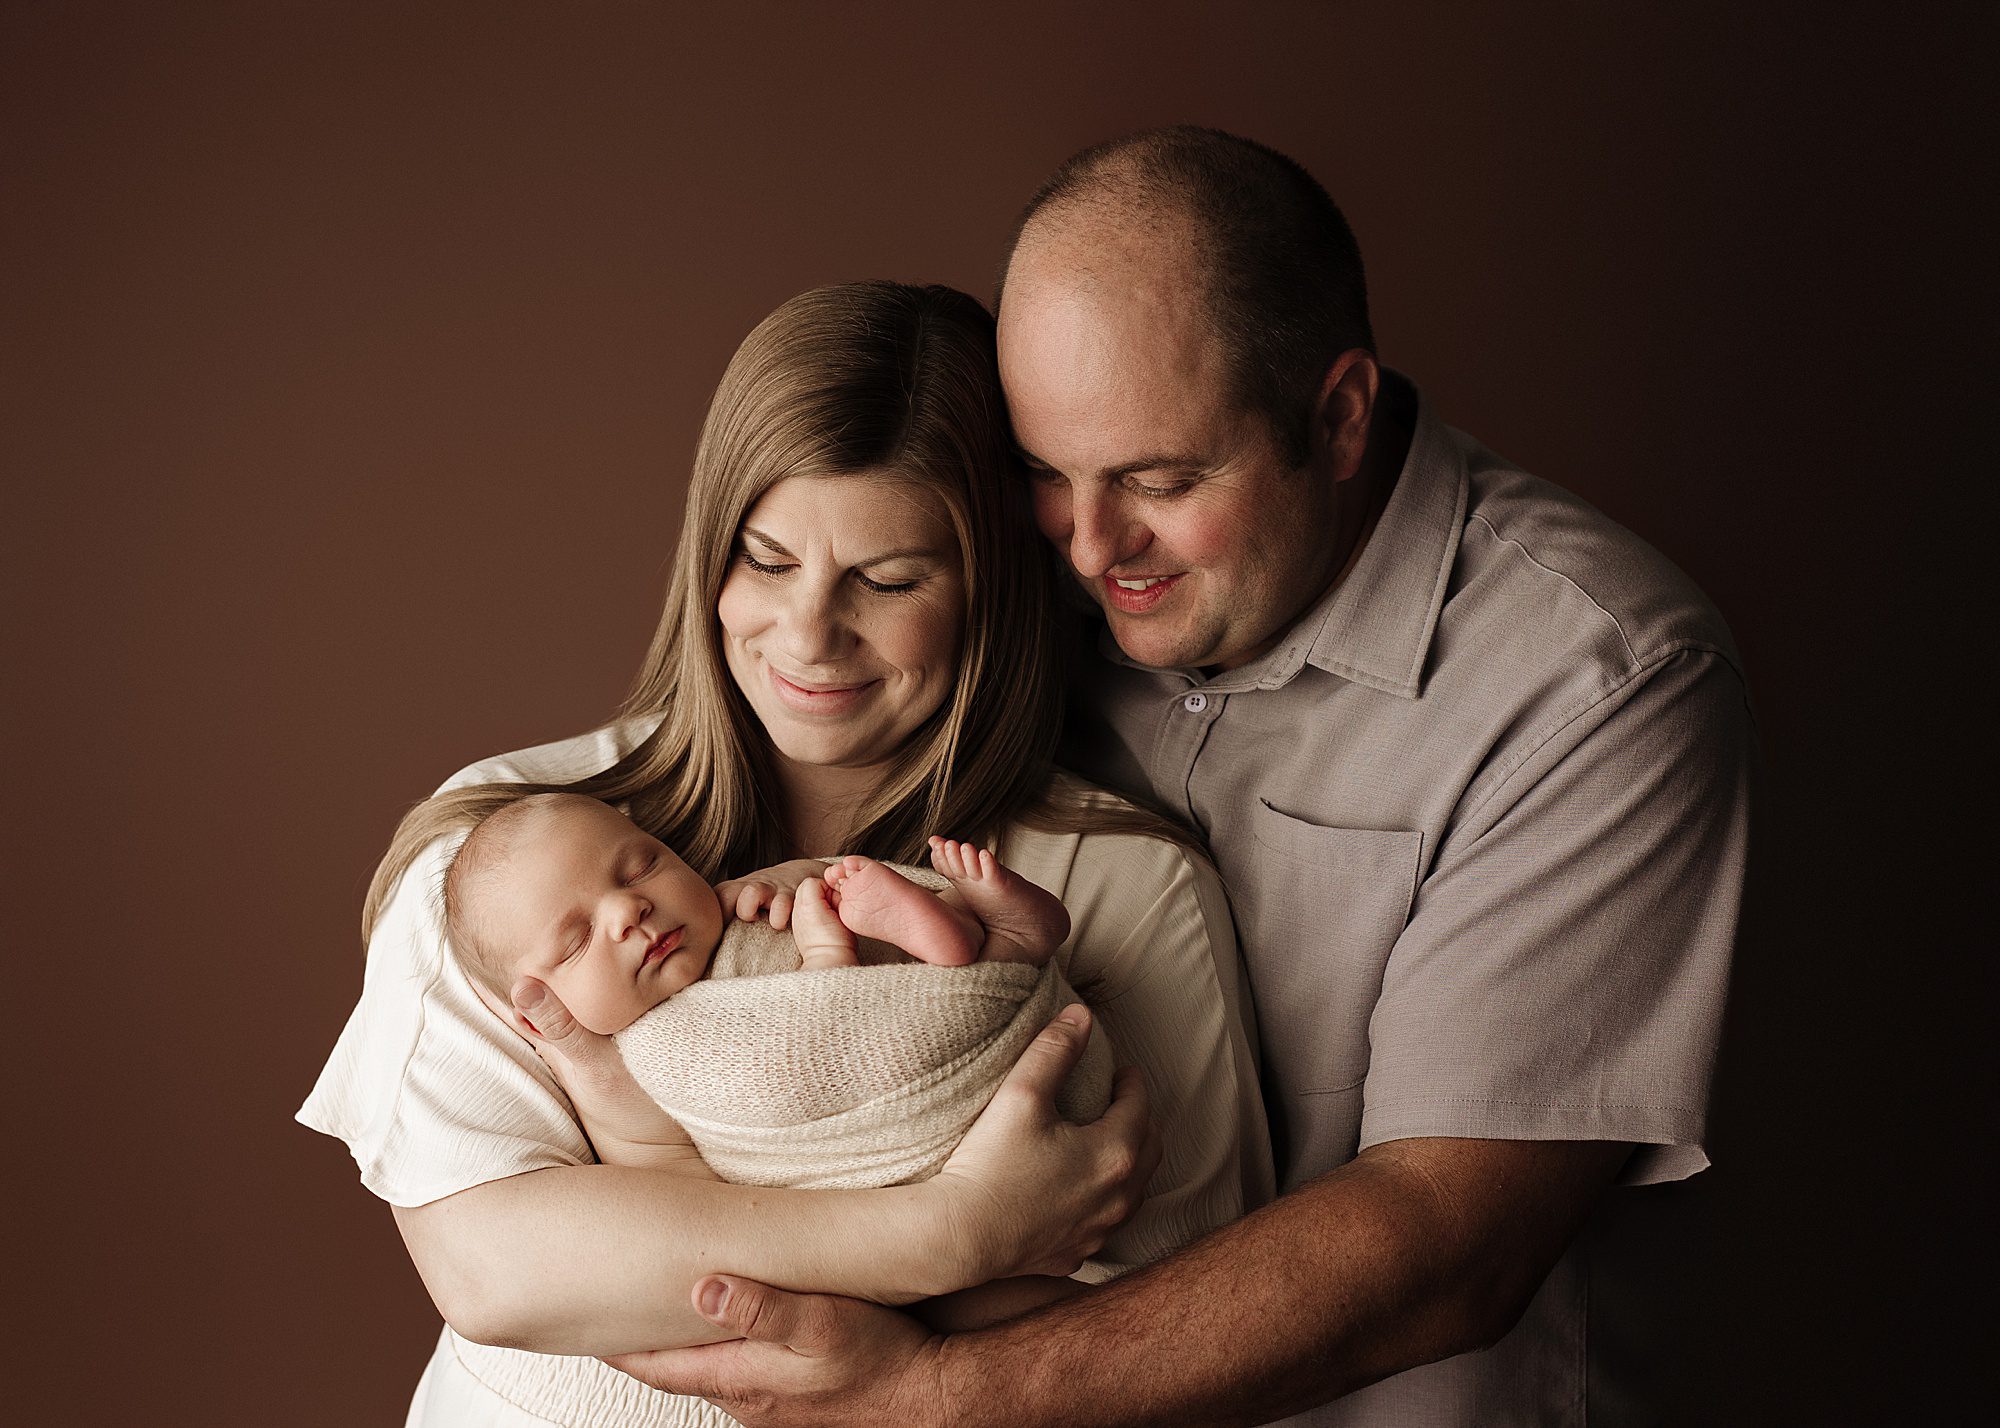 edmonton newborn photographers, edmonton newborn photographer, newborn photographer